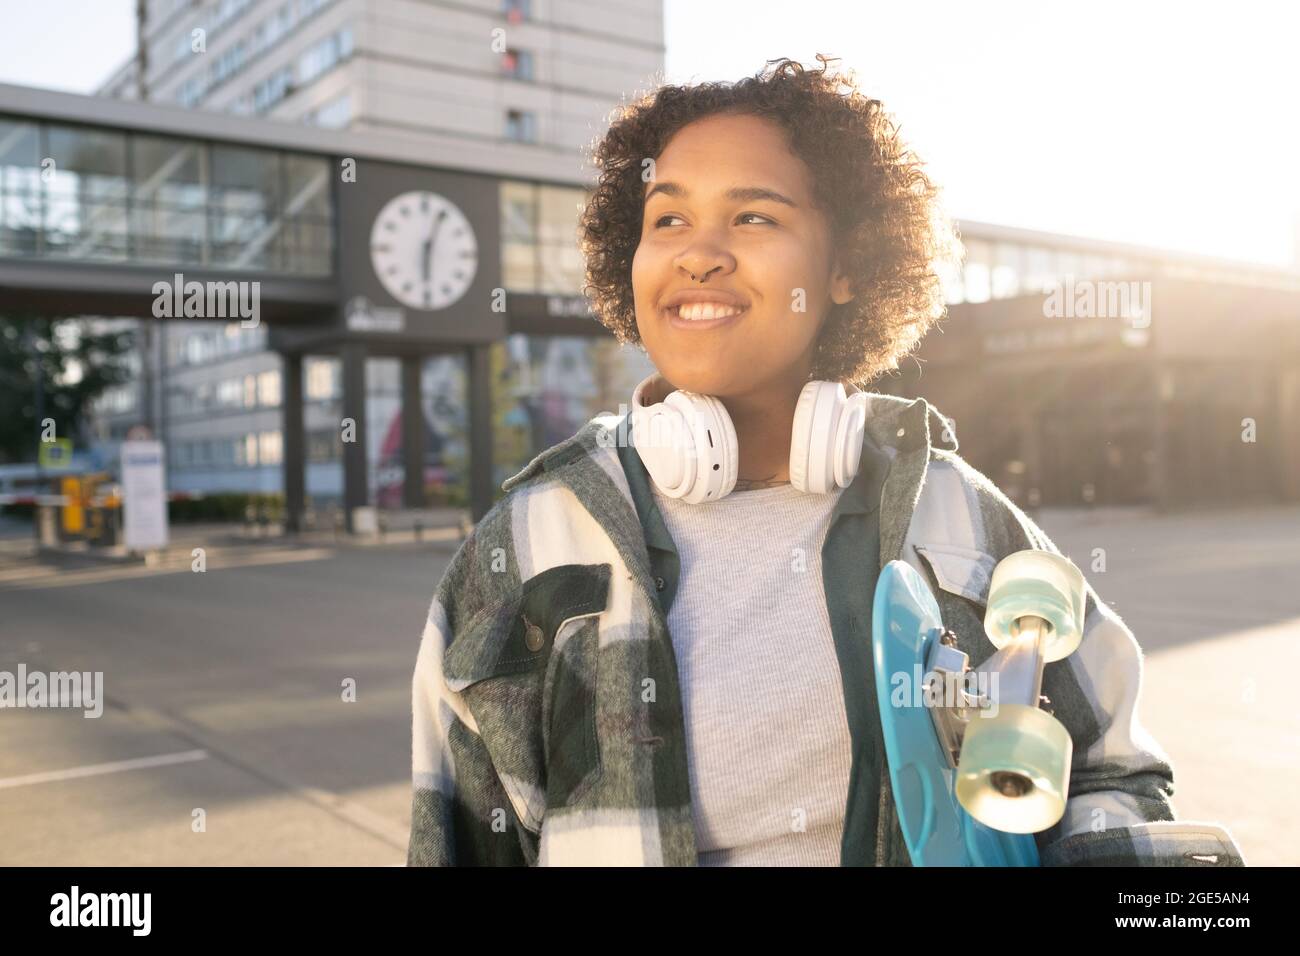 Netter, fröhlicher Teenager mit Skateboard und Kopfhörern, die im urbanen Umfeld stehen Stockfoto